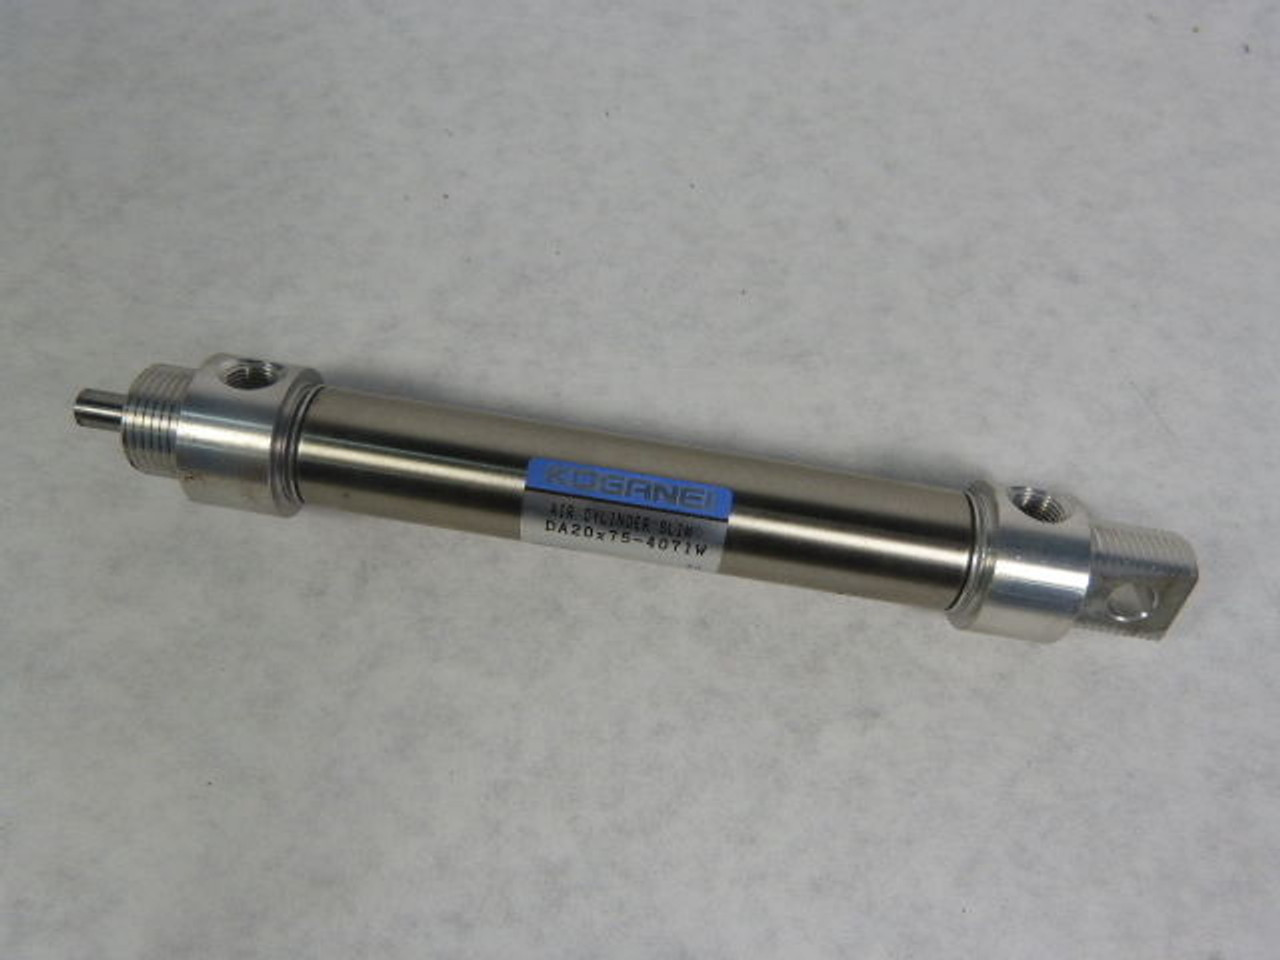 Koganei DA20X75-4071W Slim Air Cylinder 20mm Bore 75mm Stroke USED